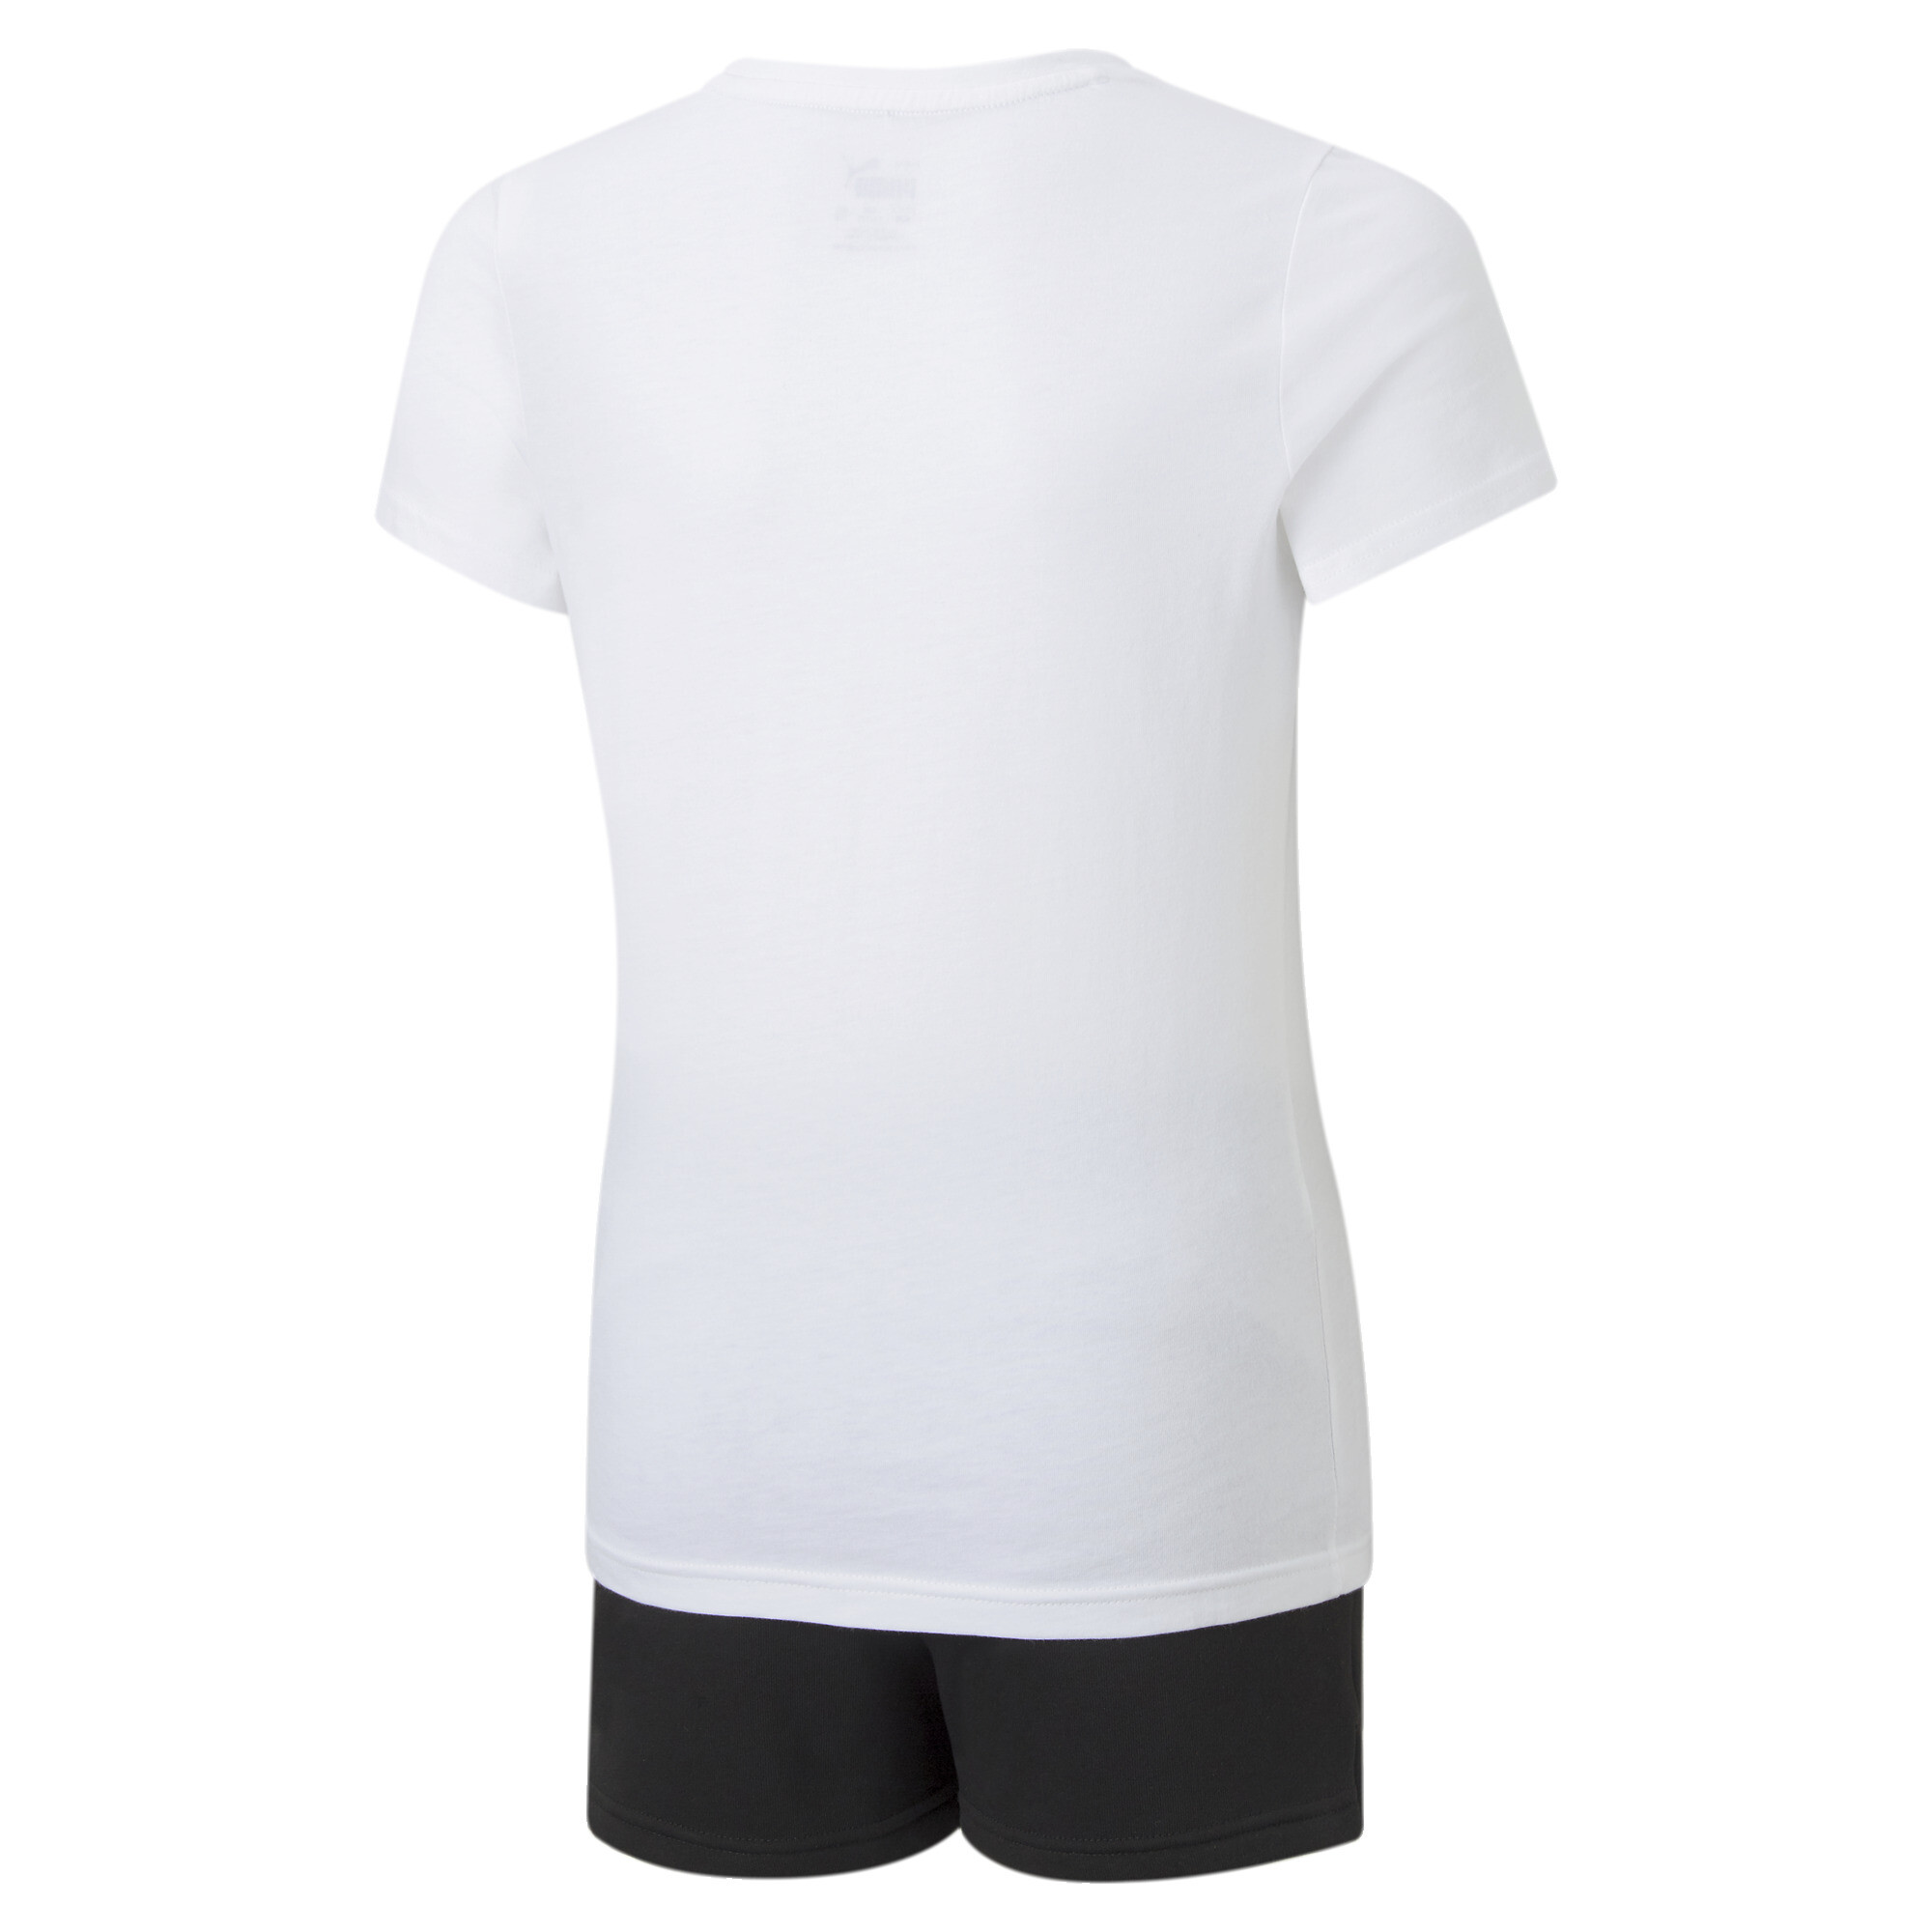 Women's Puma Logo Tee And Shorts Youth Set, White, Size 3-4Y, Clothing